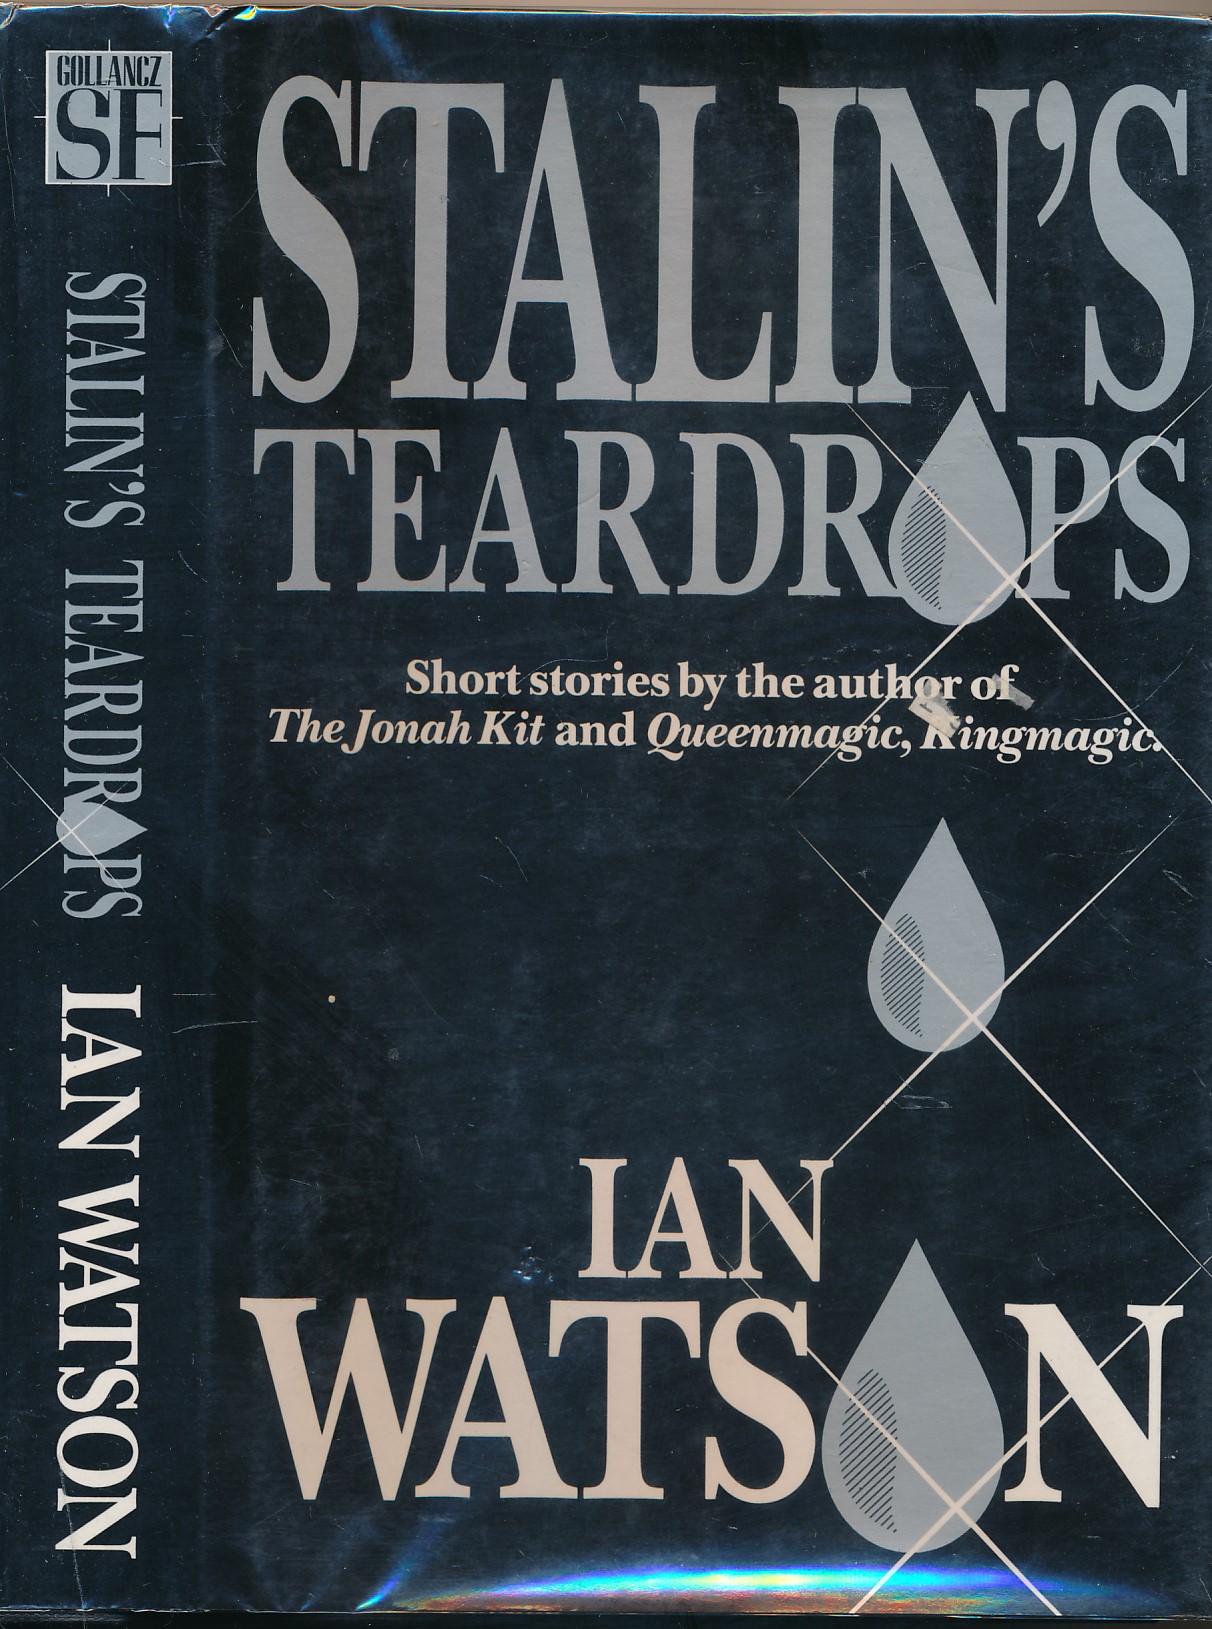 Stalin's Teardrops